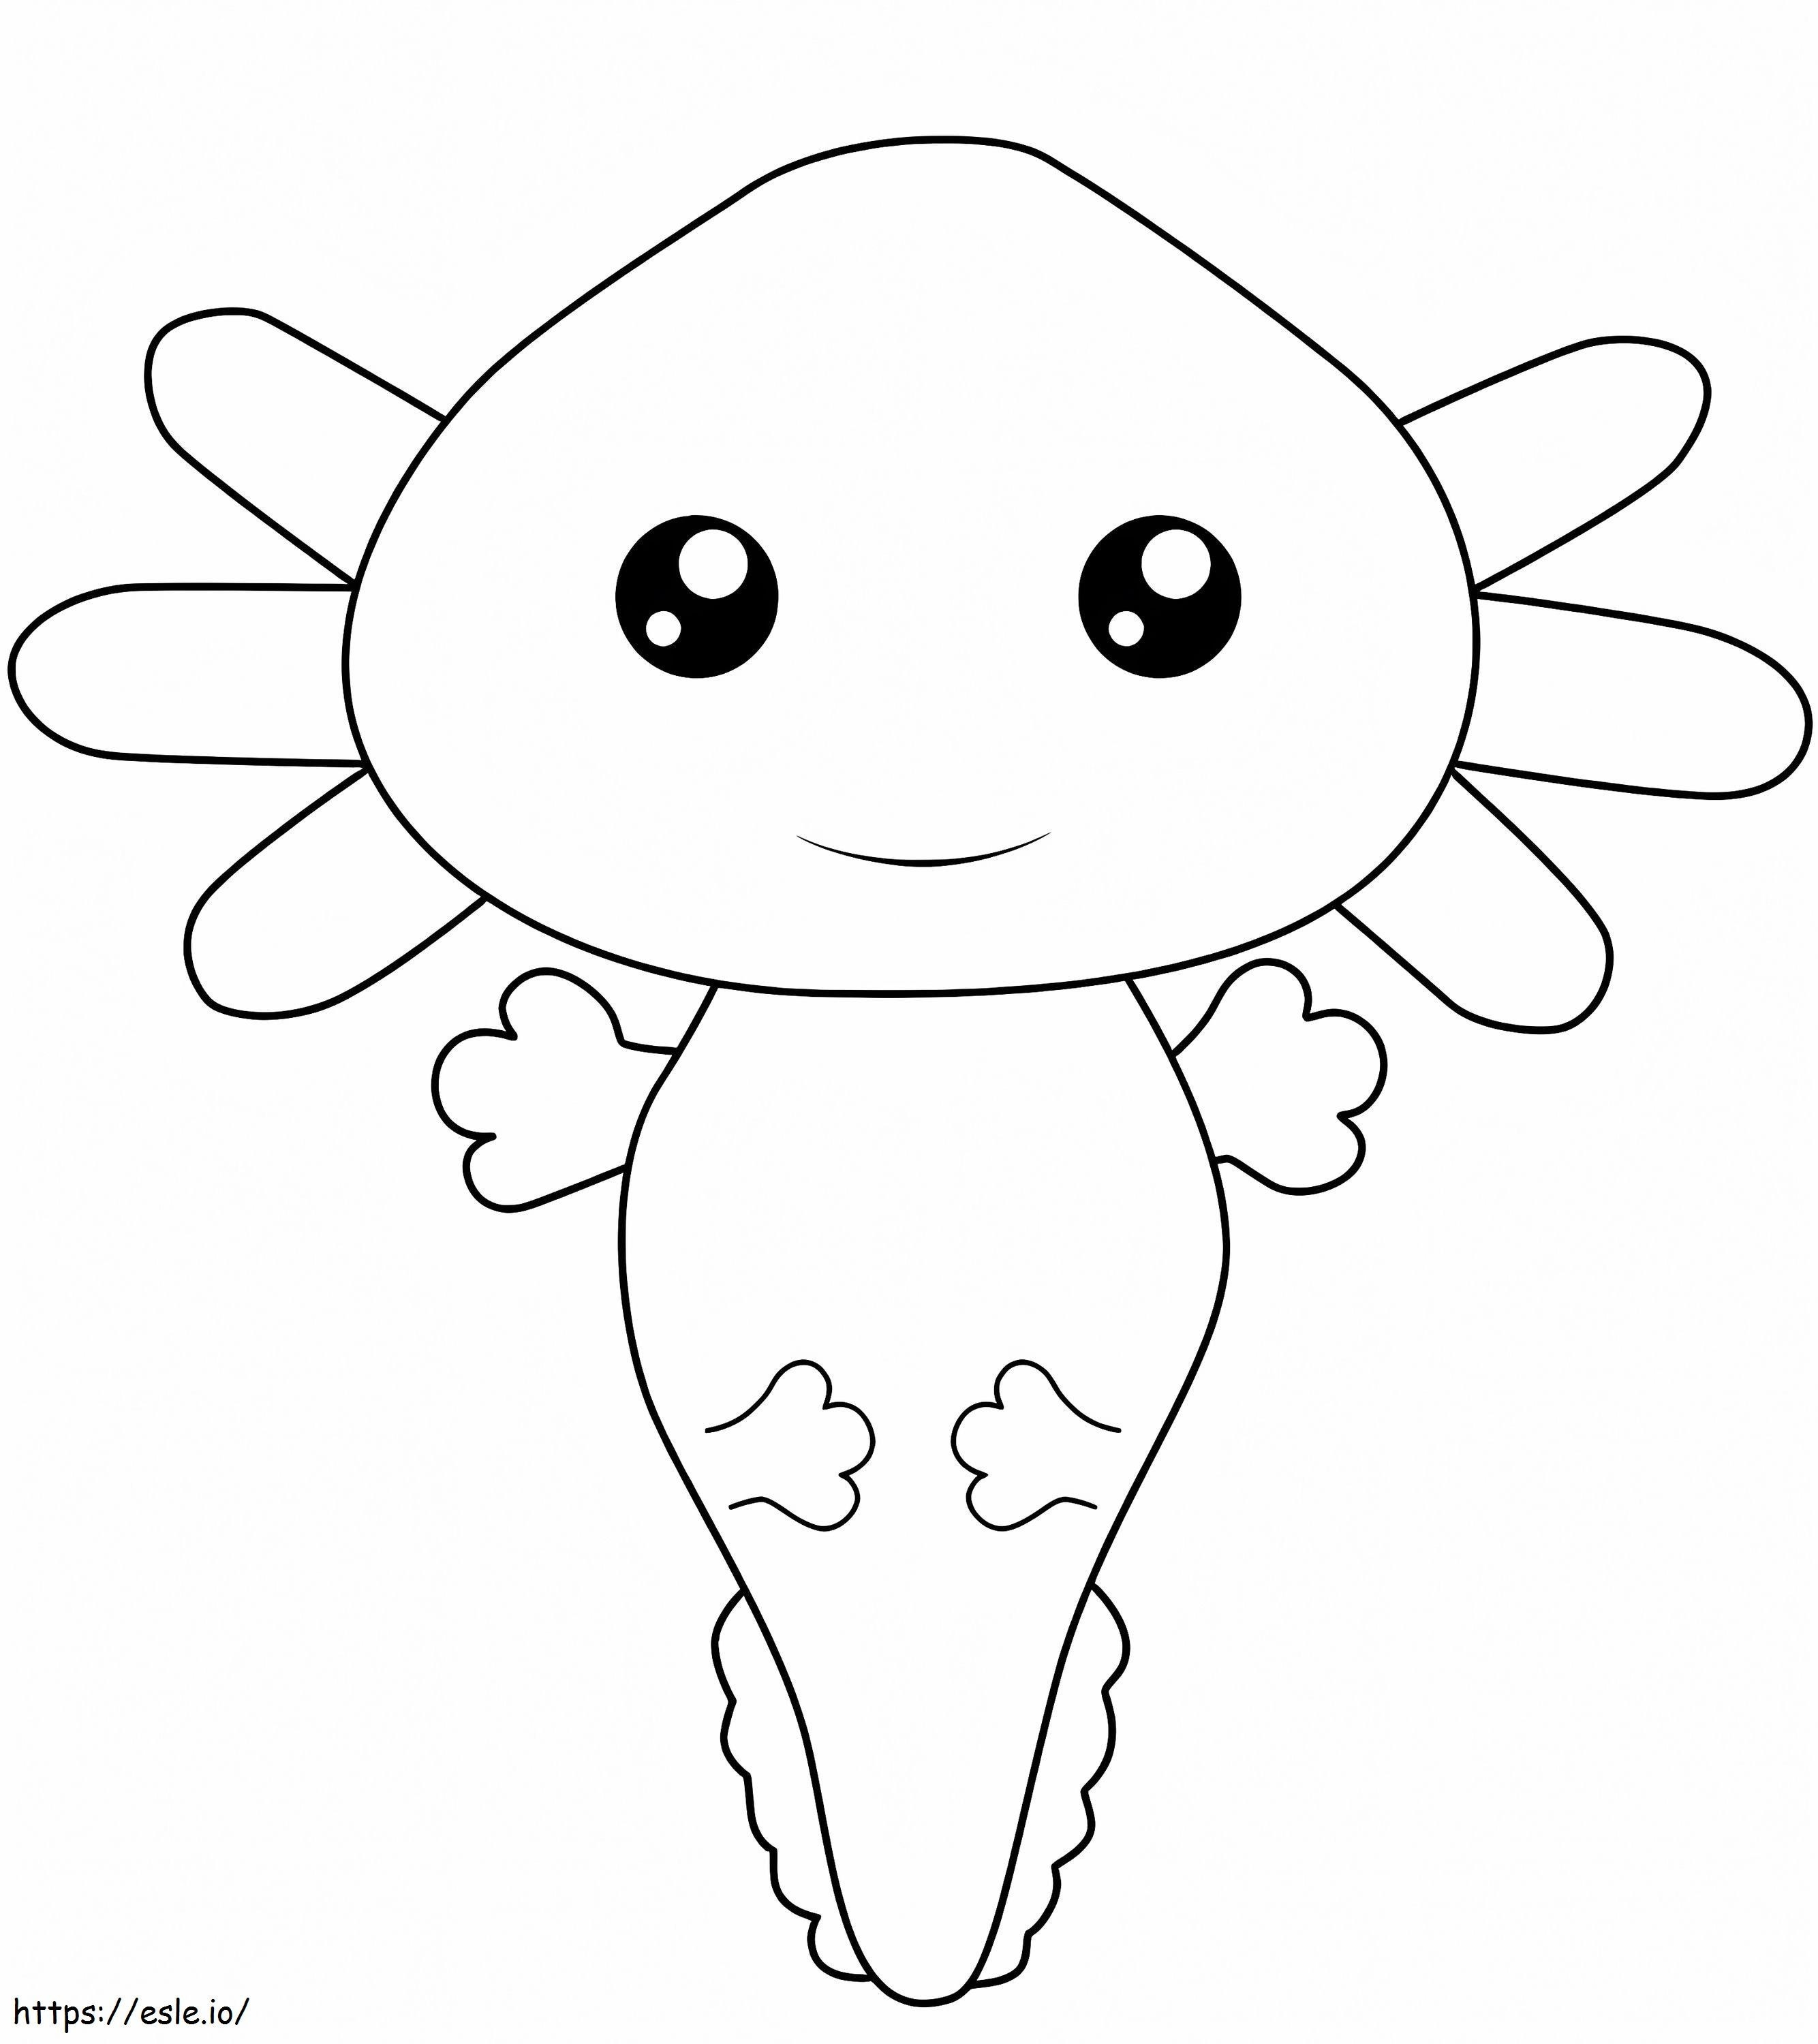 Kawaii Axolotl coloring page